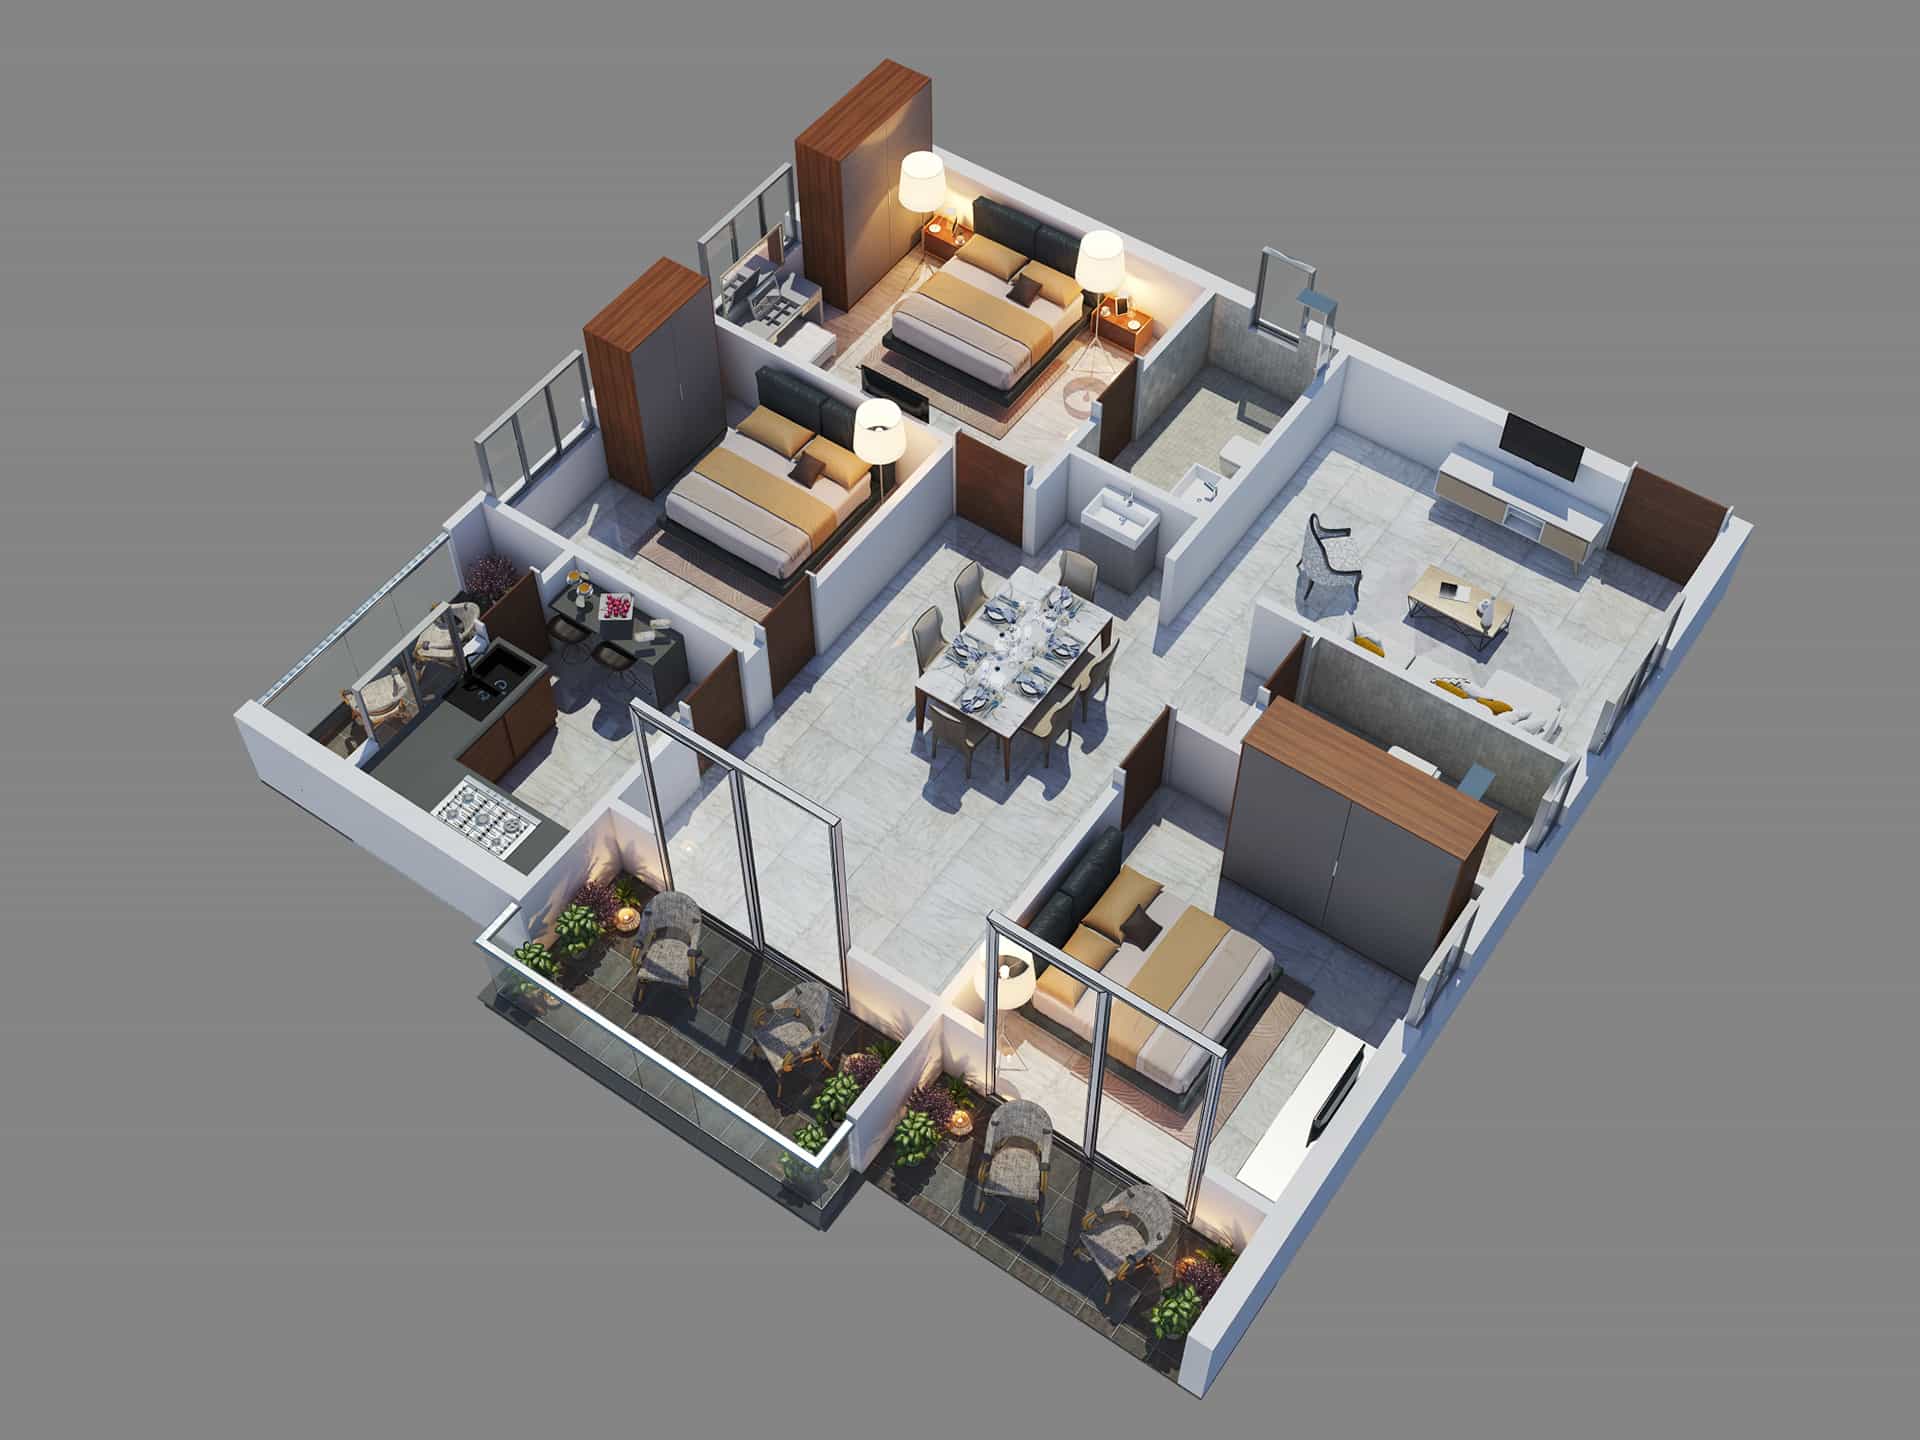 2D/3D Floor Plan and Rendering Portfolio